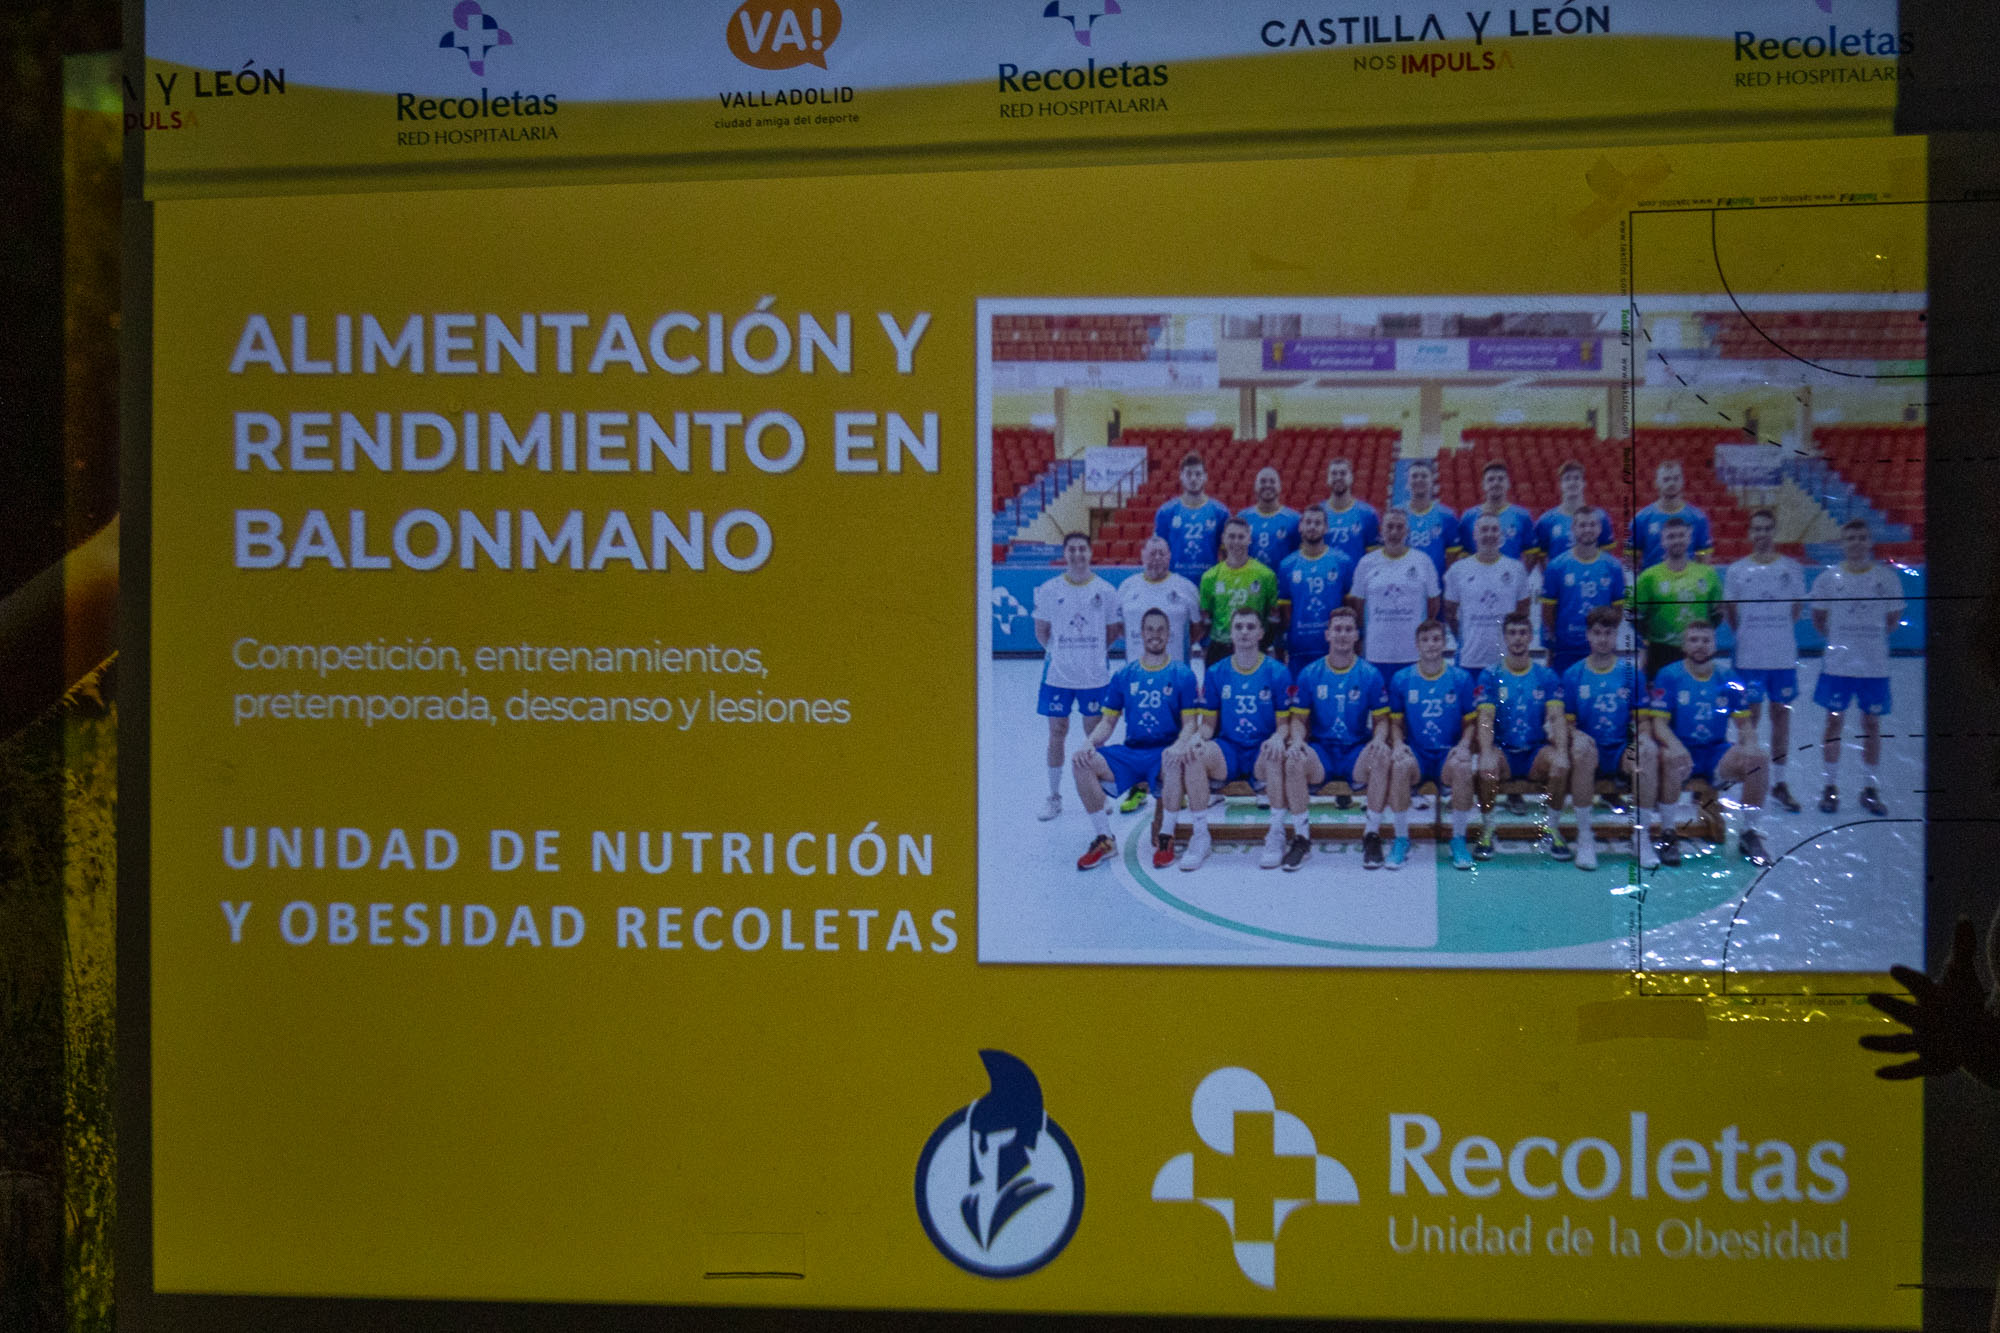 Charla sobre nutrición realizada por especialistas de Recoletas Red Hospitalaria al equipo filial del club | Galería 3 / 9